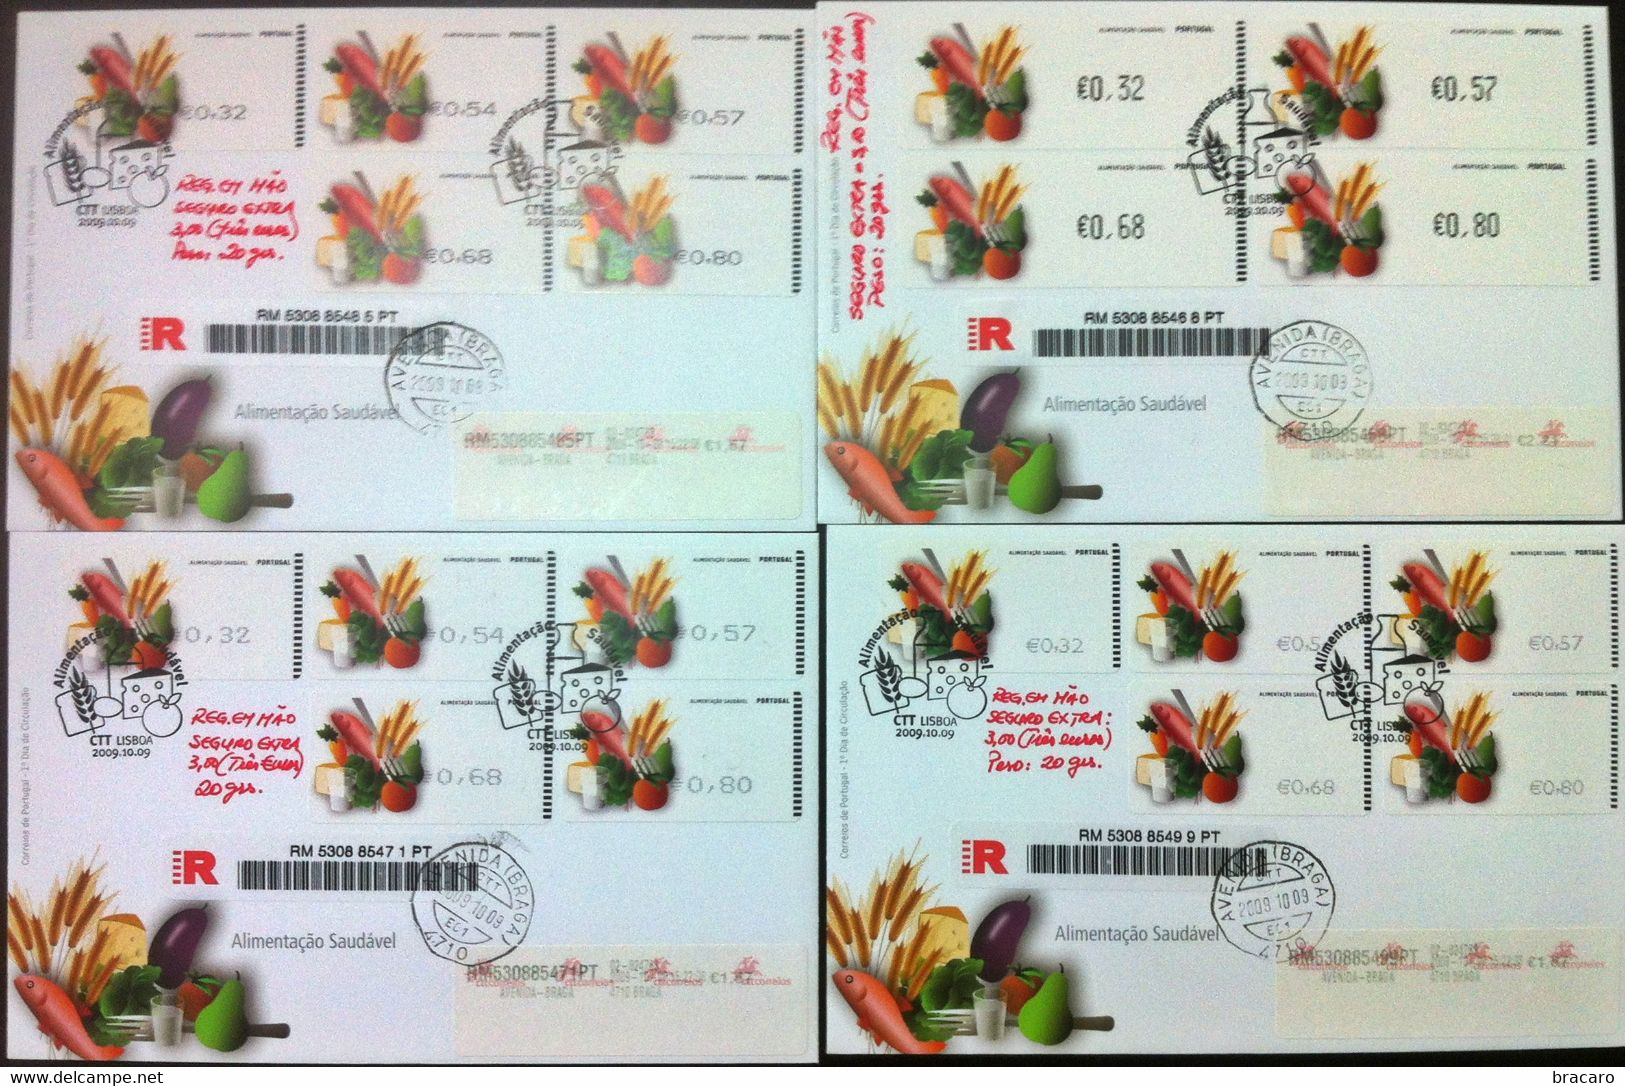 Portugal - ATM Machine Stamps - FDC (cover) X 4 - Alimentação Saudável 2009 - Registered, Cancel Braga - Franking Machines (EMA)